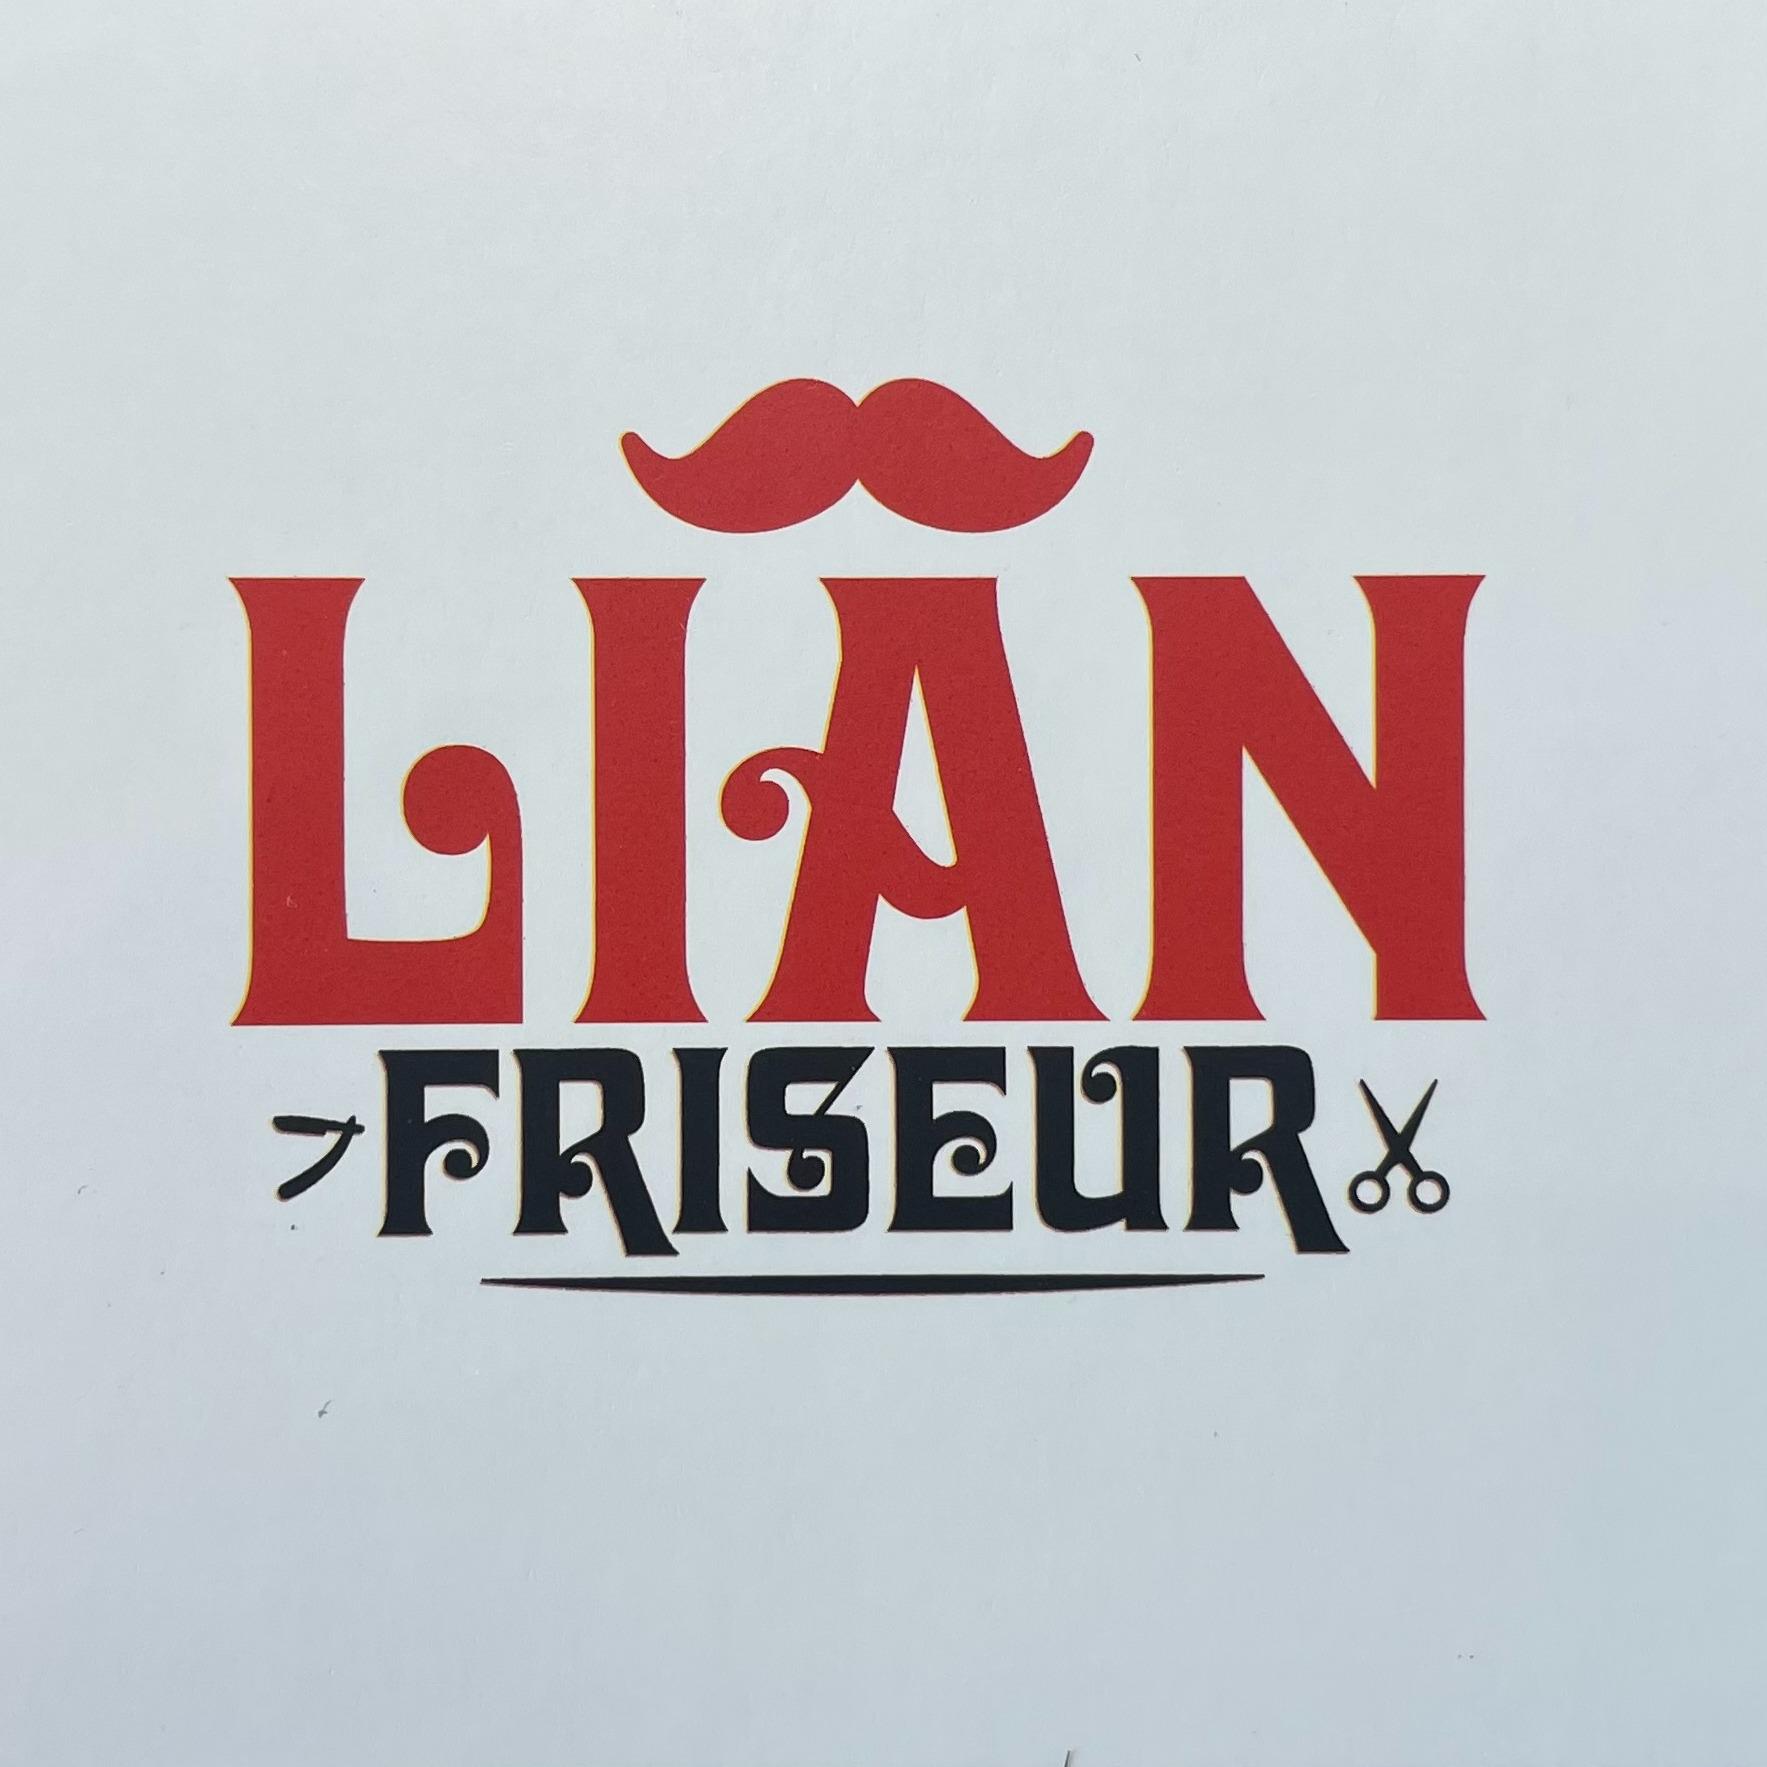 Lian Friseur  